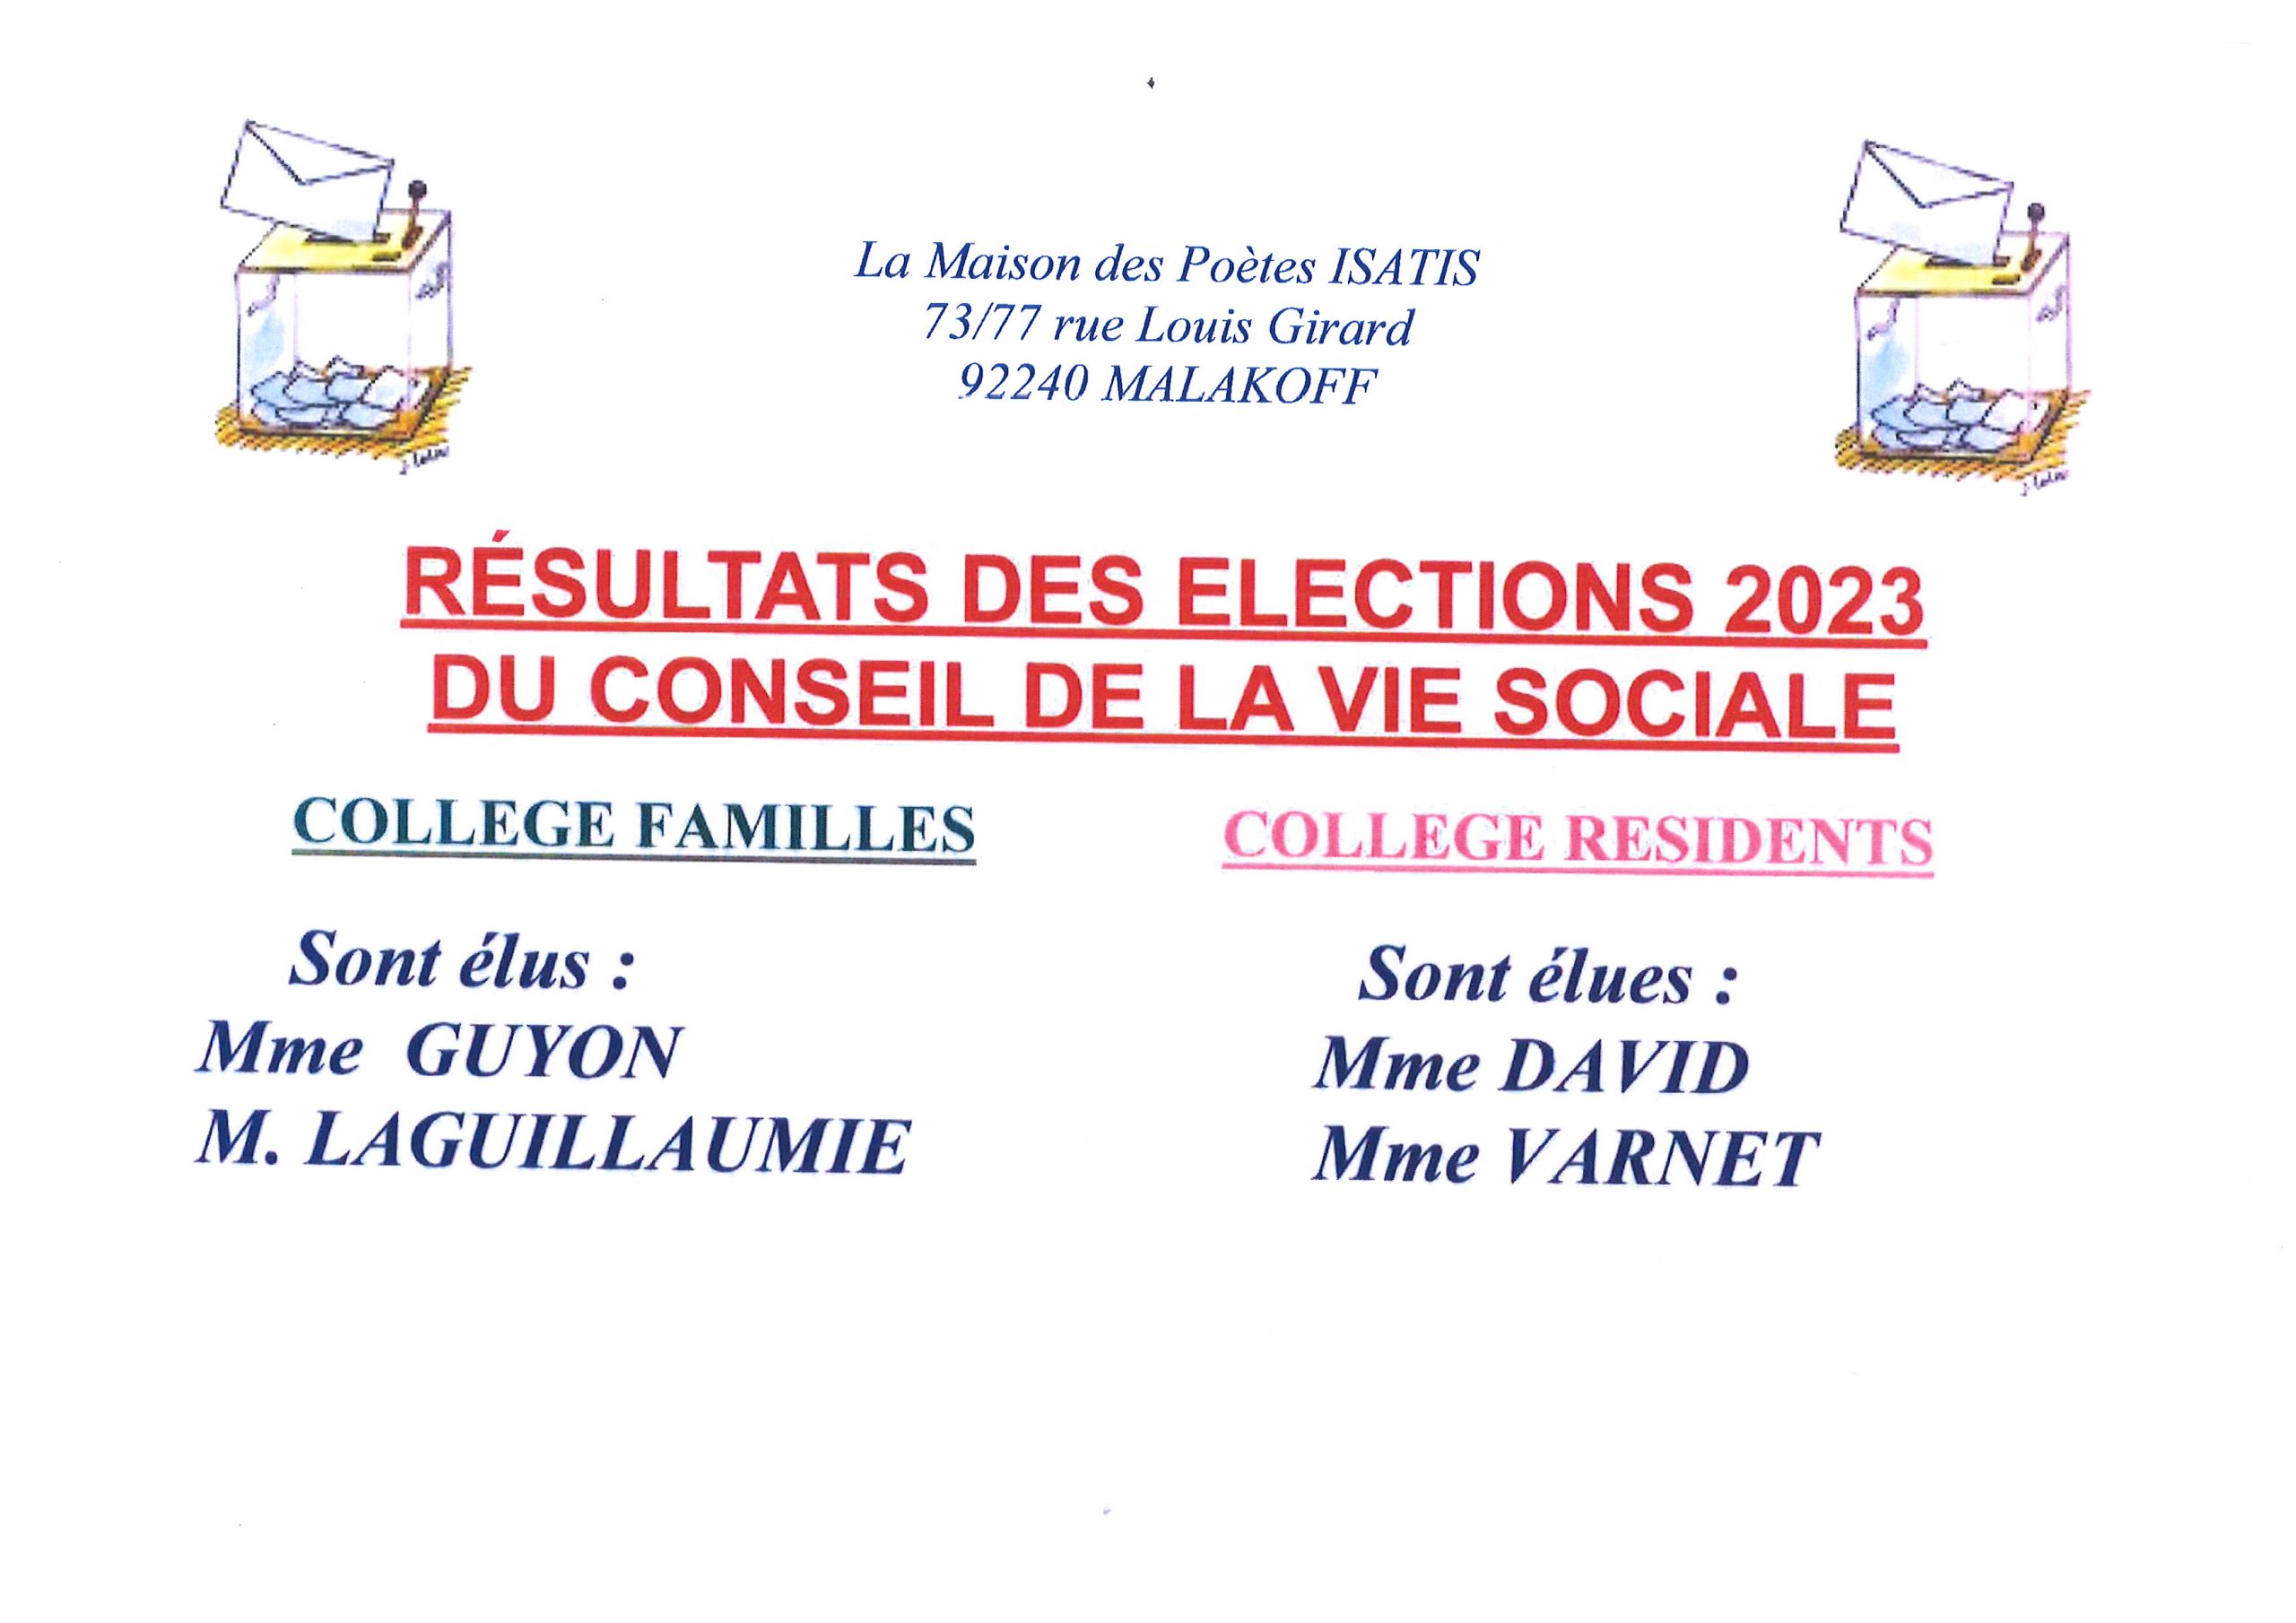 Résultats des élections du Conseil de la vie Sociale du 27 juin 2023